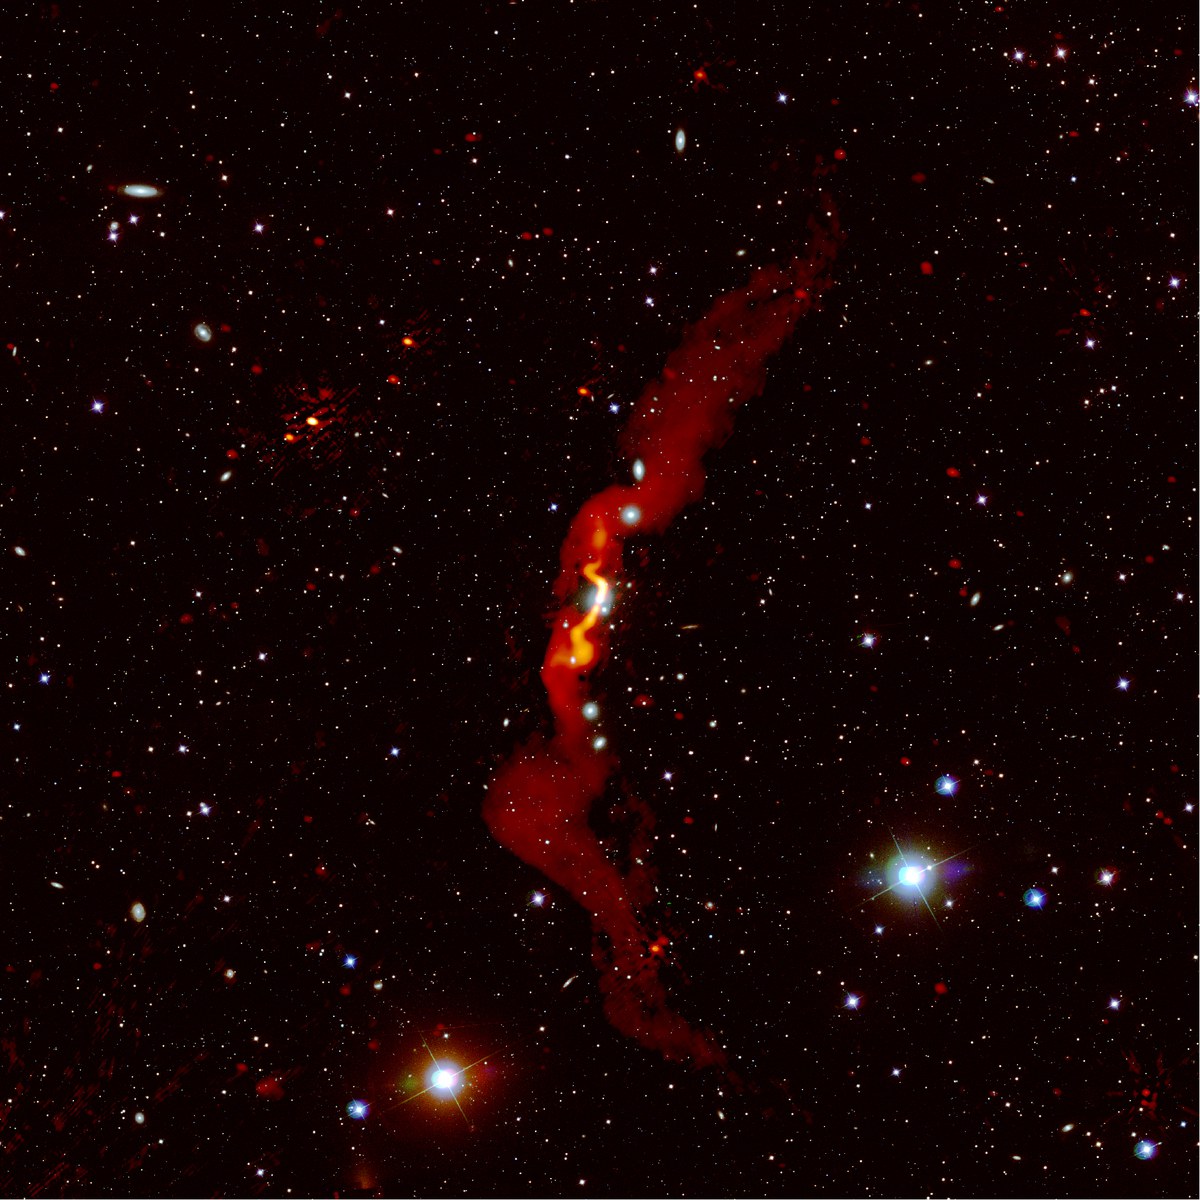 Die Radiogalaxie 3C31, die von Heesen et al (2018) mit LOFAR beobachtet wurde, ist rot über einem optischen Bild dargestellt. LOFAR konnte zeigen, dass die Radiogalaxie mehr als 3 Millionen Lichtjahre groß ist.